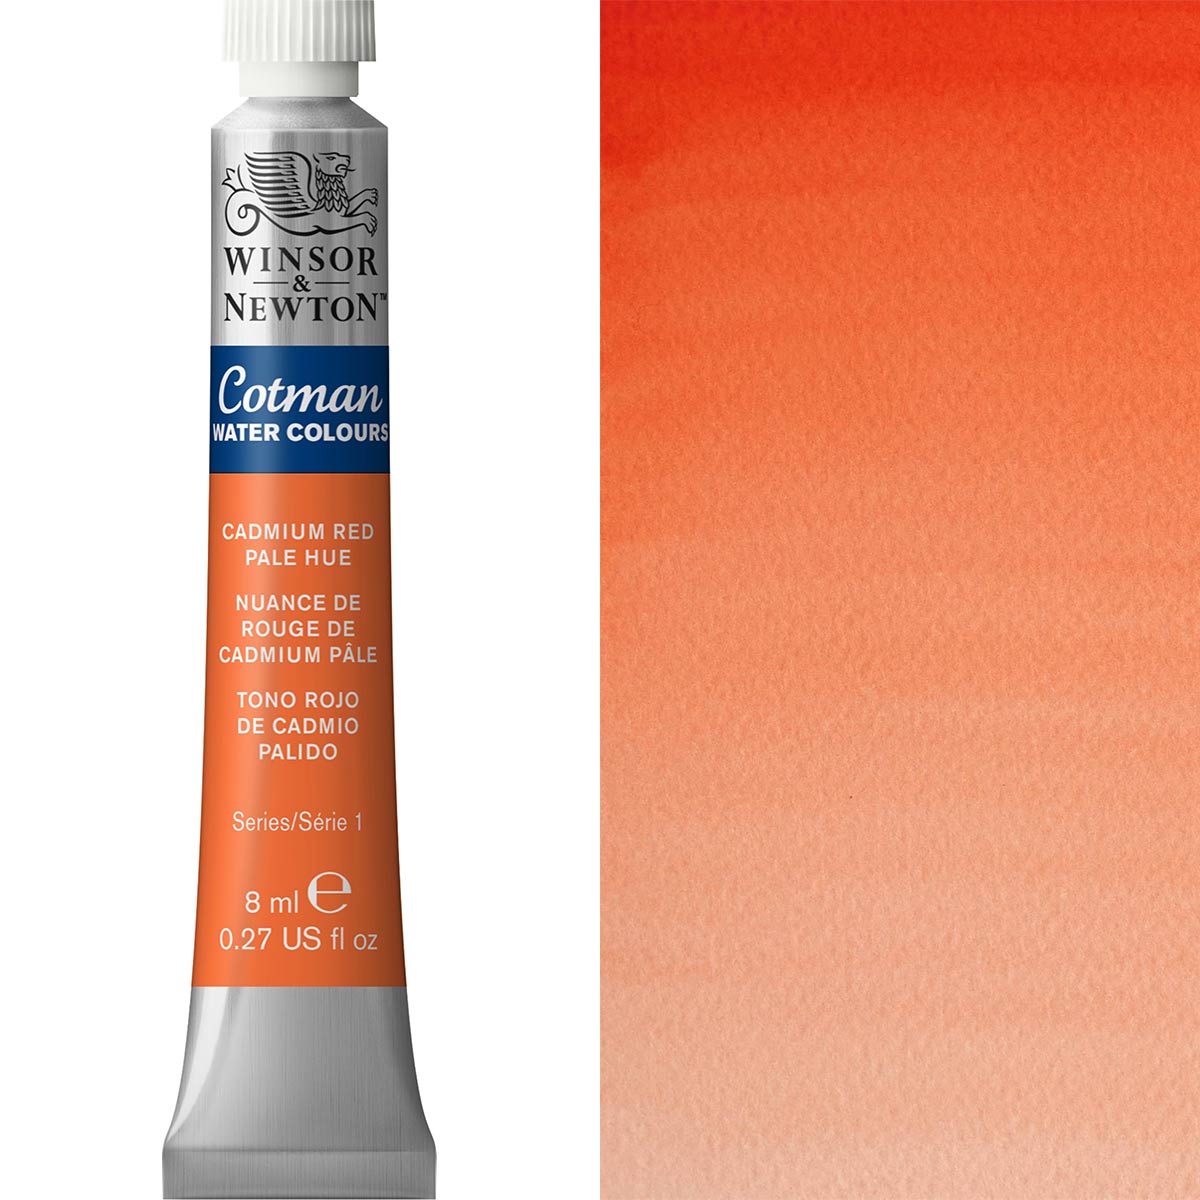 Winsor et Newton - Cotman Watercolor - 8 ml - Cadmium Red Pale